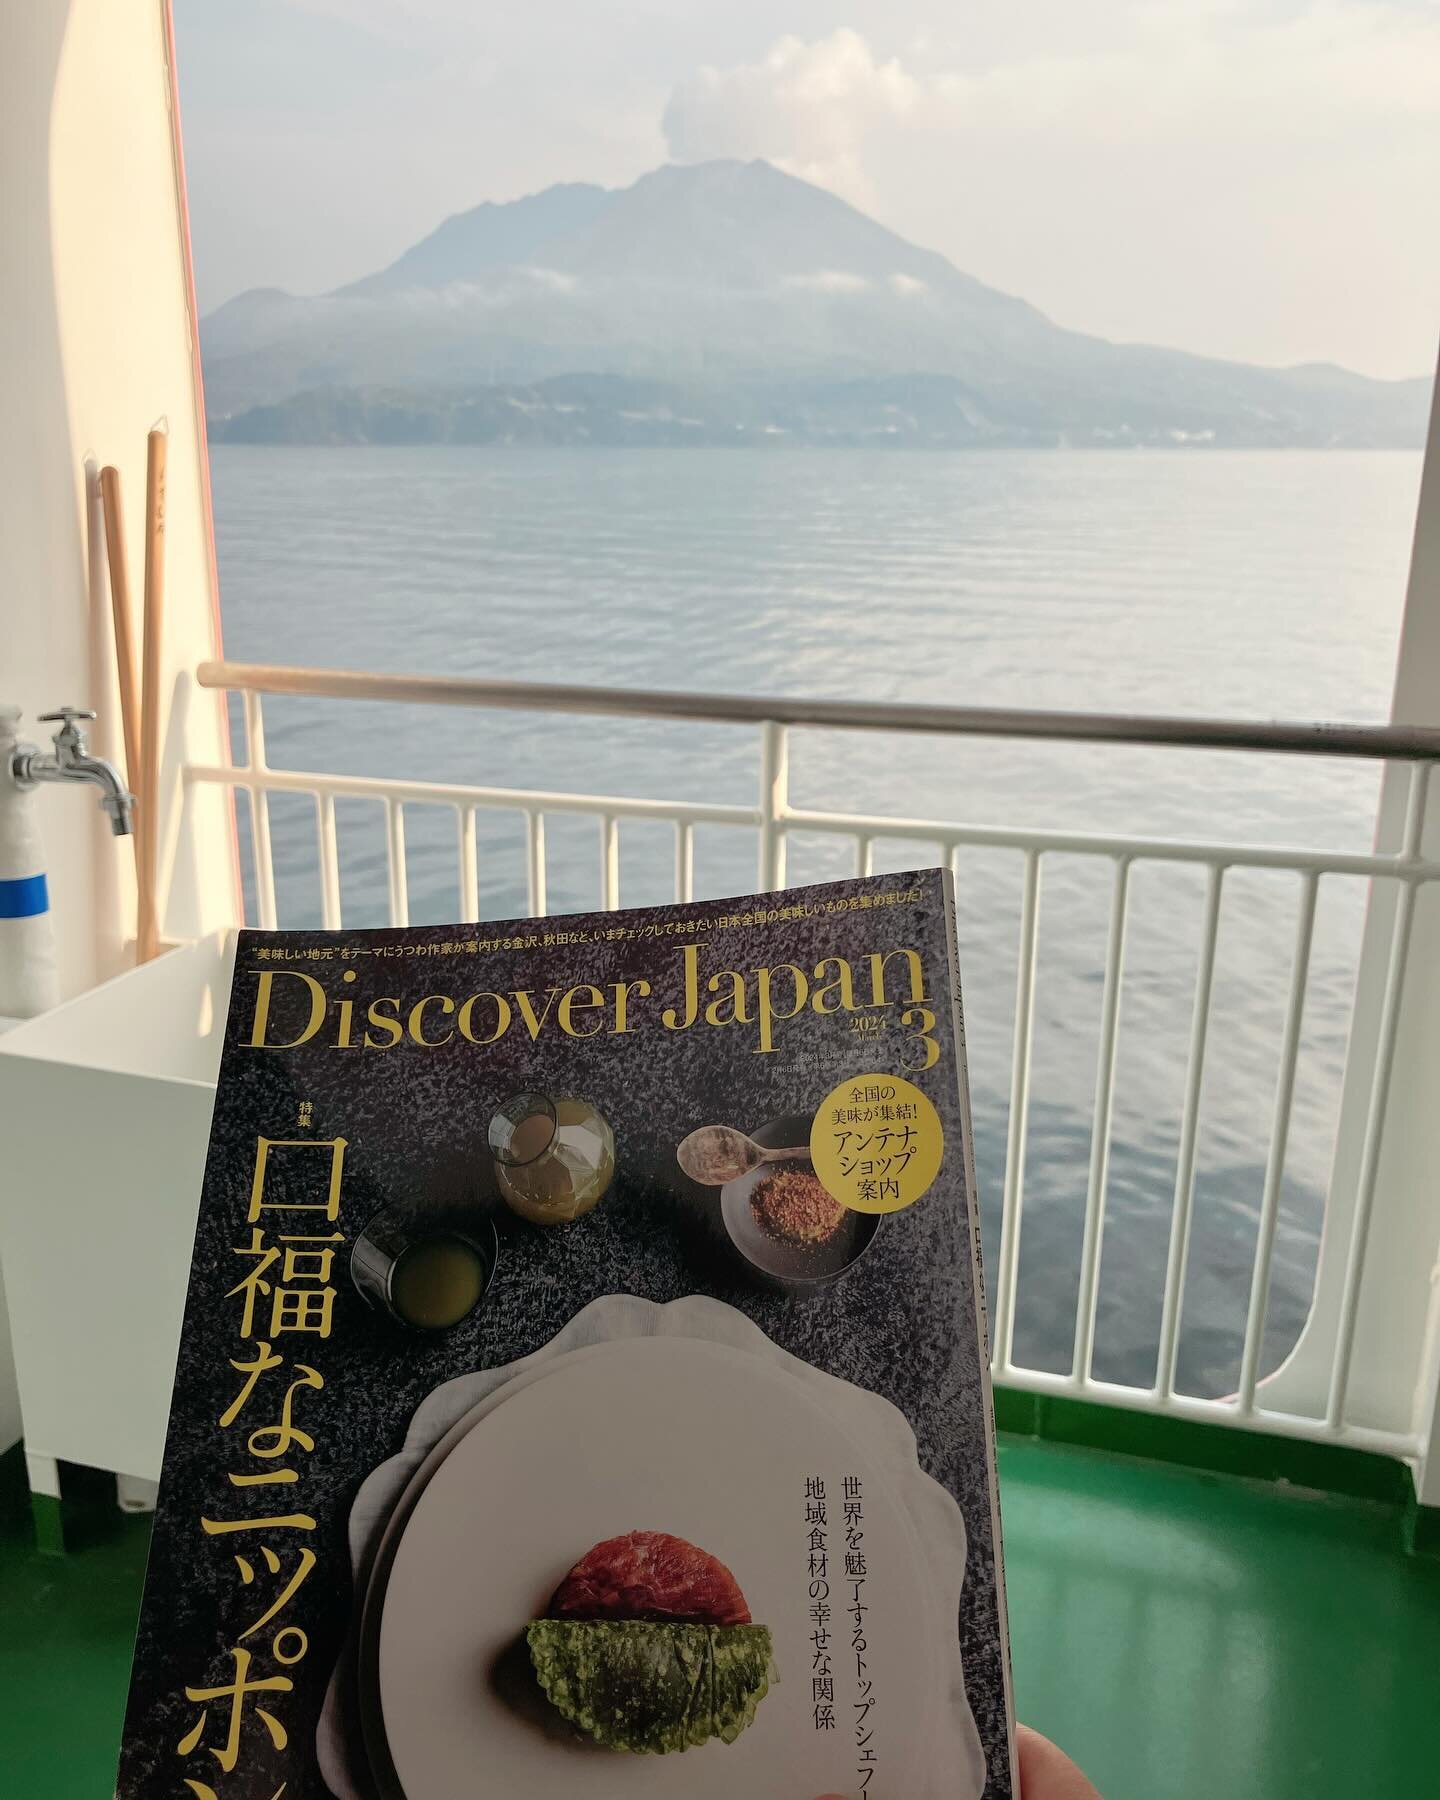 届いたばかりの&rdquo;Discovery Japan 、2024年3月号&rdquo;を持って鹿児島へ行くフェリーに飛び乗った。特集は&rdquo;口福なニッポン&rdquo;。トップシェフのお店からアンテナショップまであらゆるジャンルの美味しいが詰まった一冊。&rdquo;あの人の美味しい地元自慢&rdquo;の中で私は&rdquo;鹿児島食材でドイツ風朝食を&rdquo;を紹介しました。ぜひ見てください。